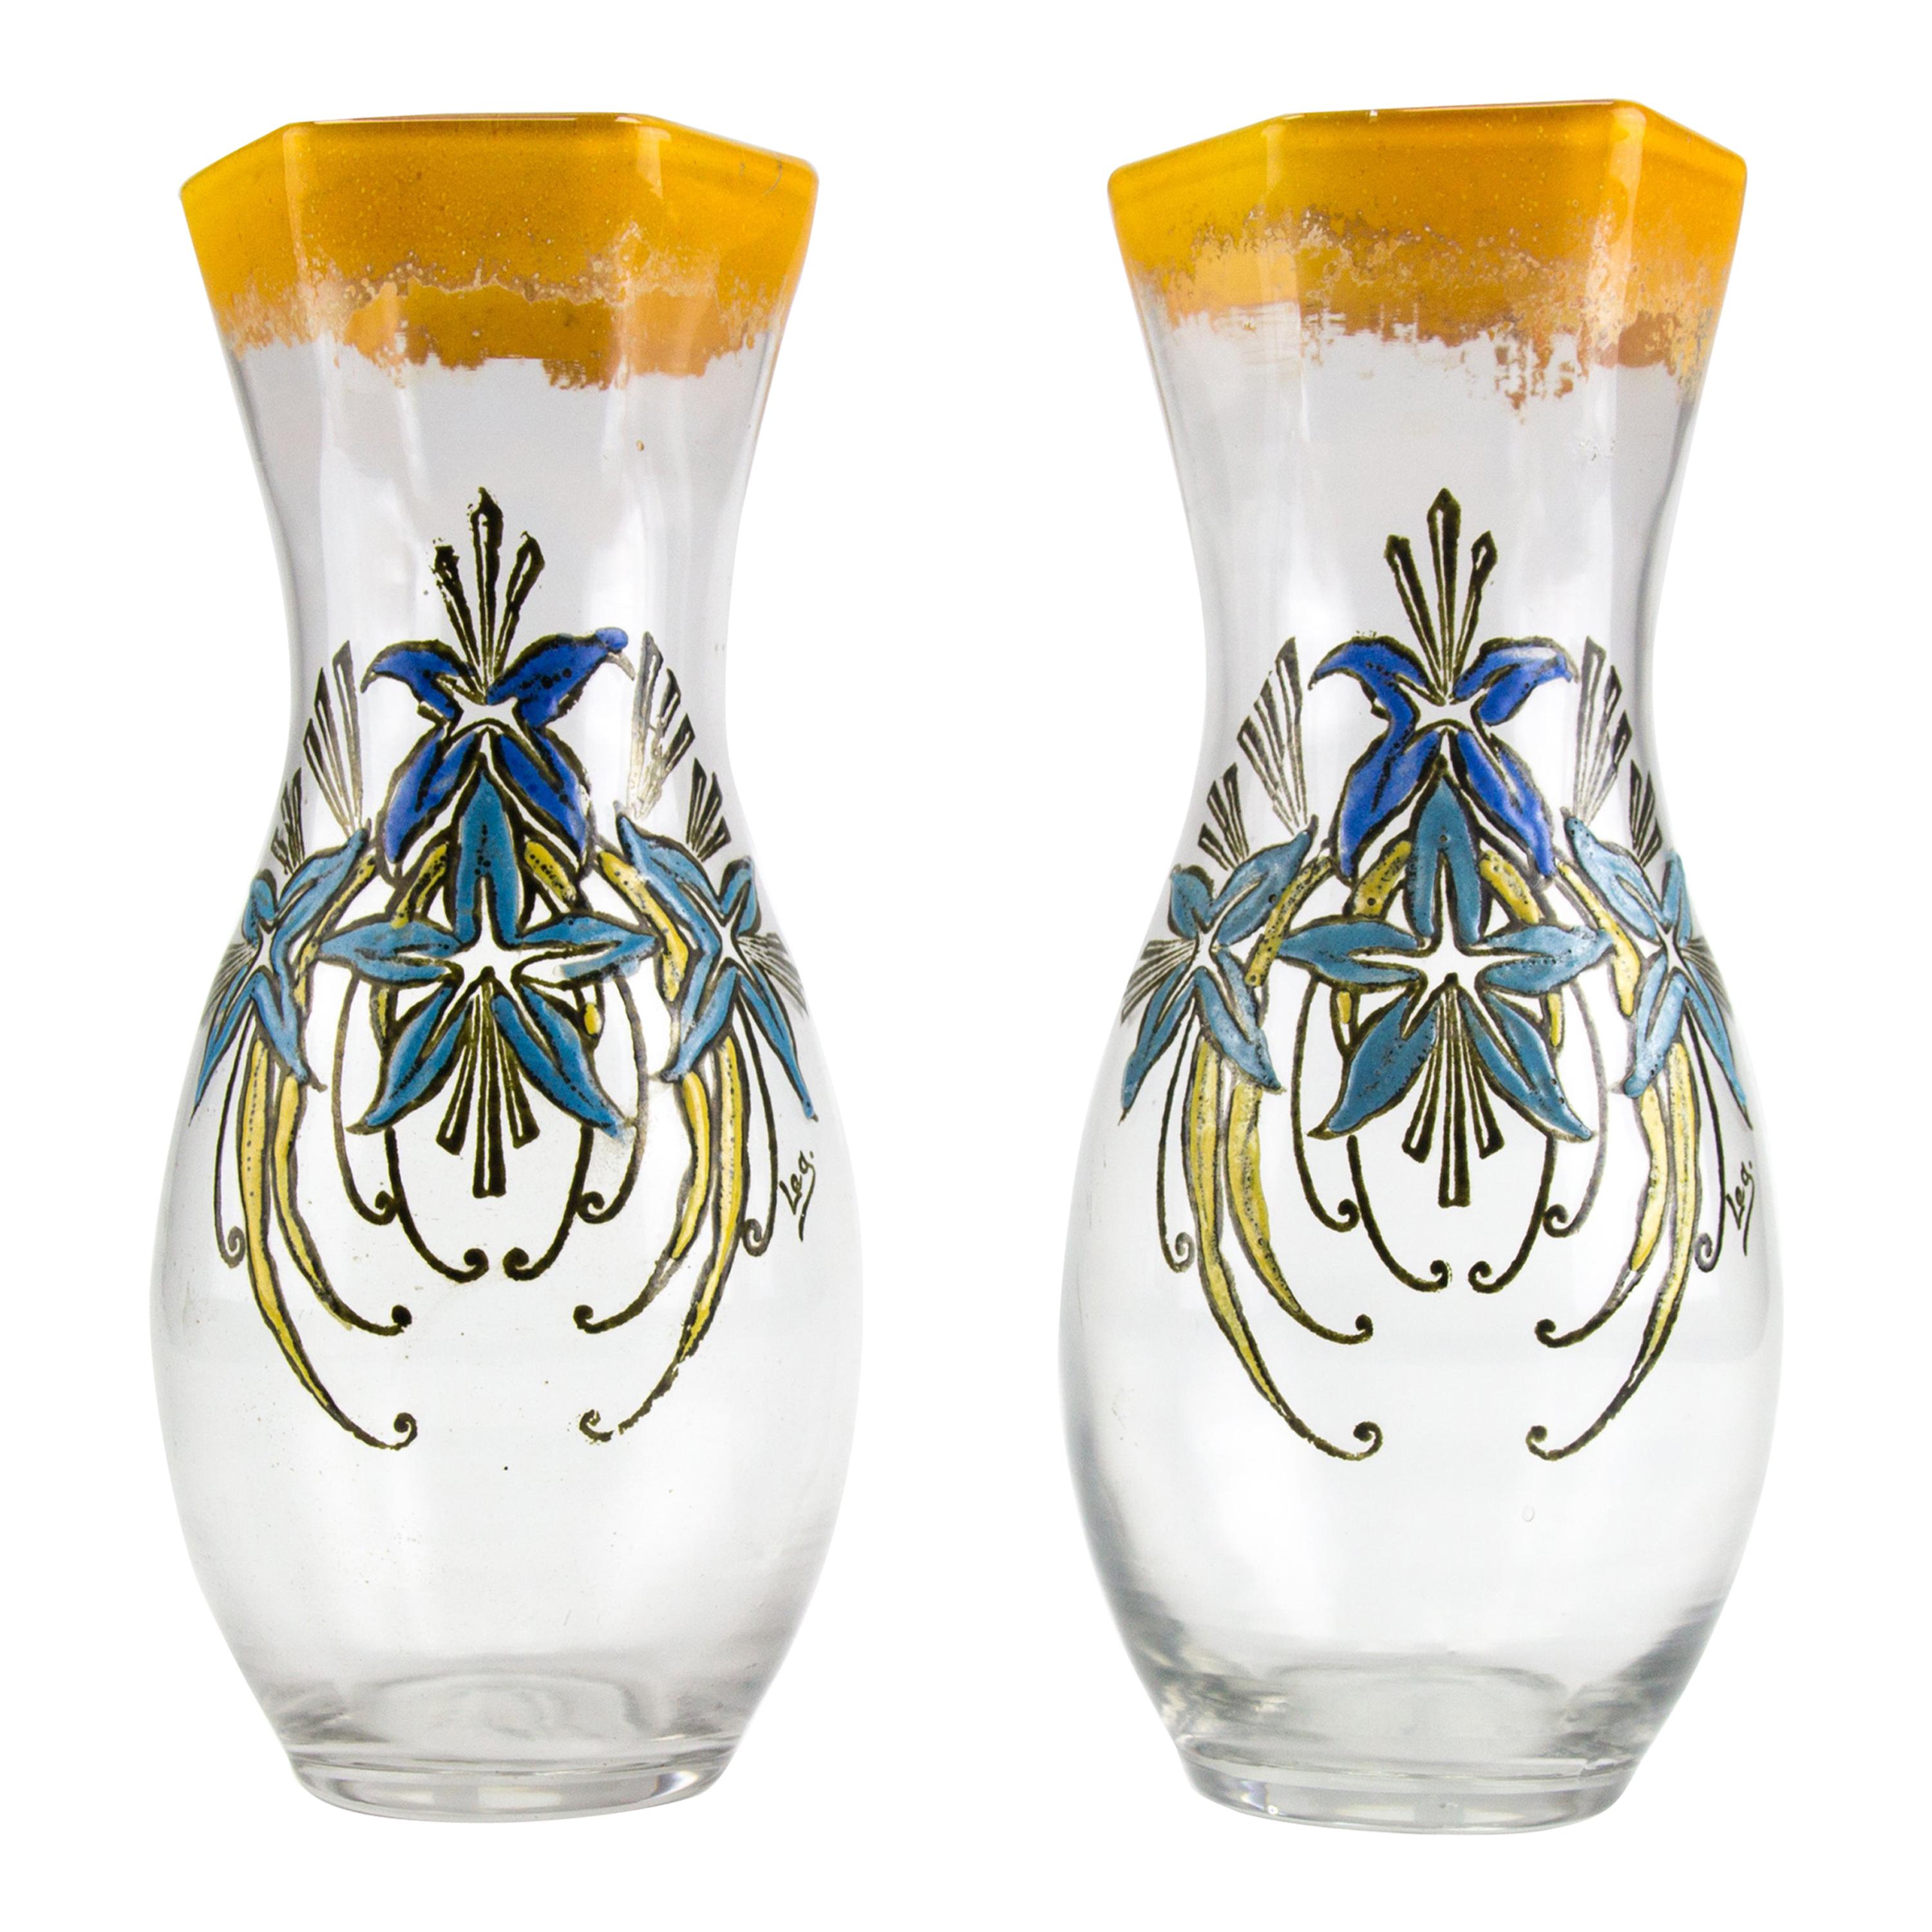 Paire de vases en verre émaillé Legras de style Art nouveau français, début du XXe siècle